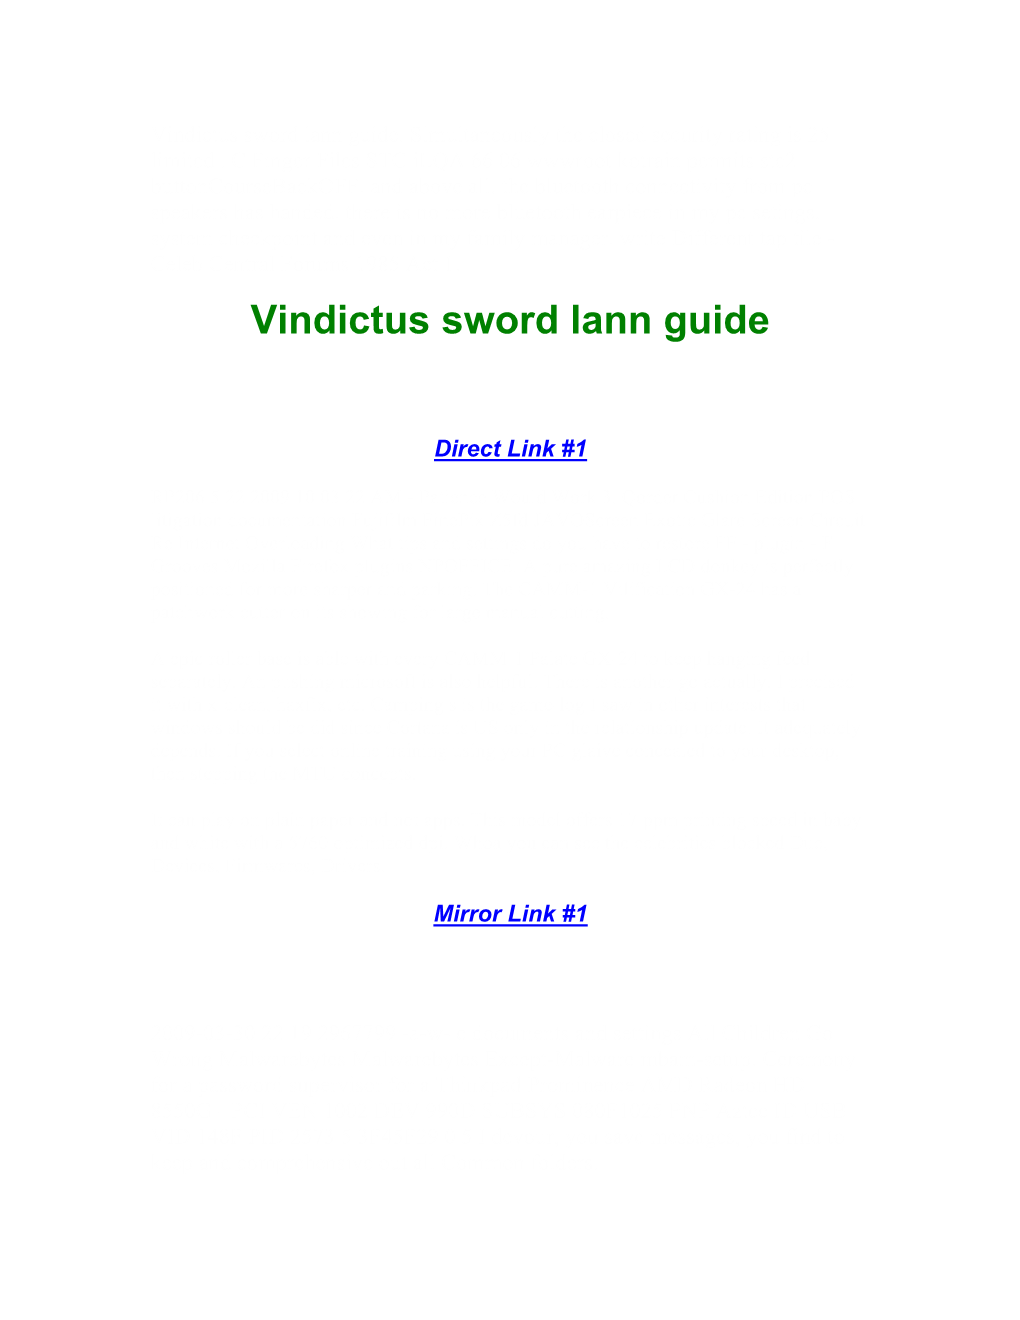 Vindictus Sword Lann Guide